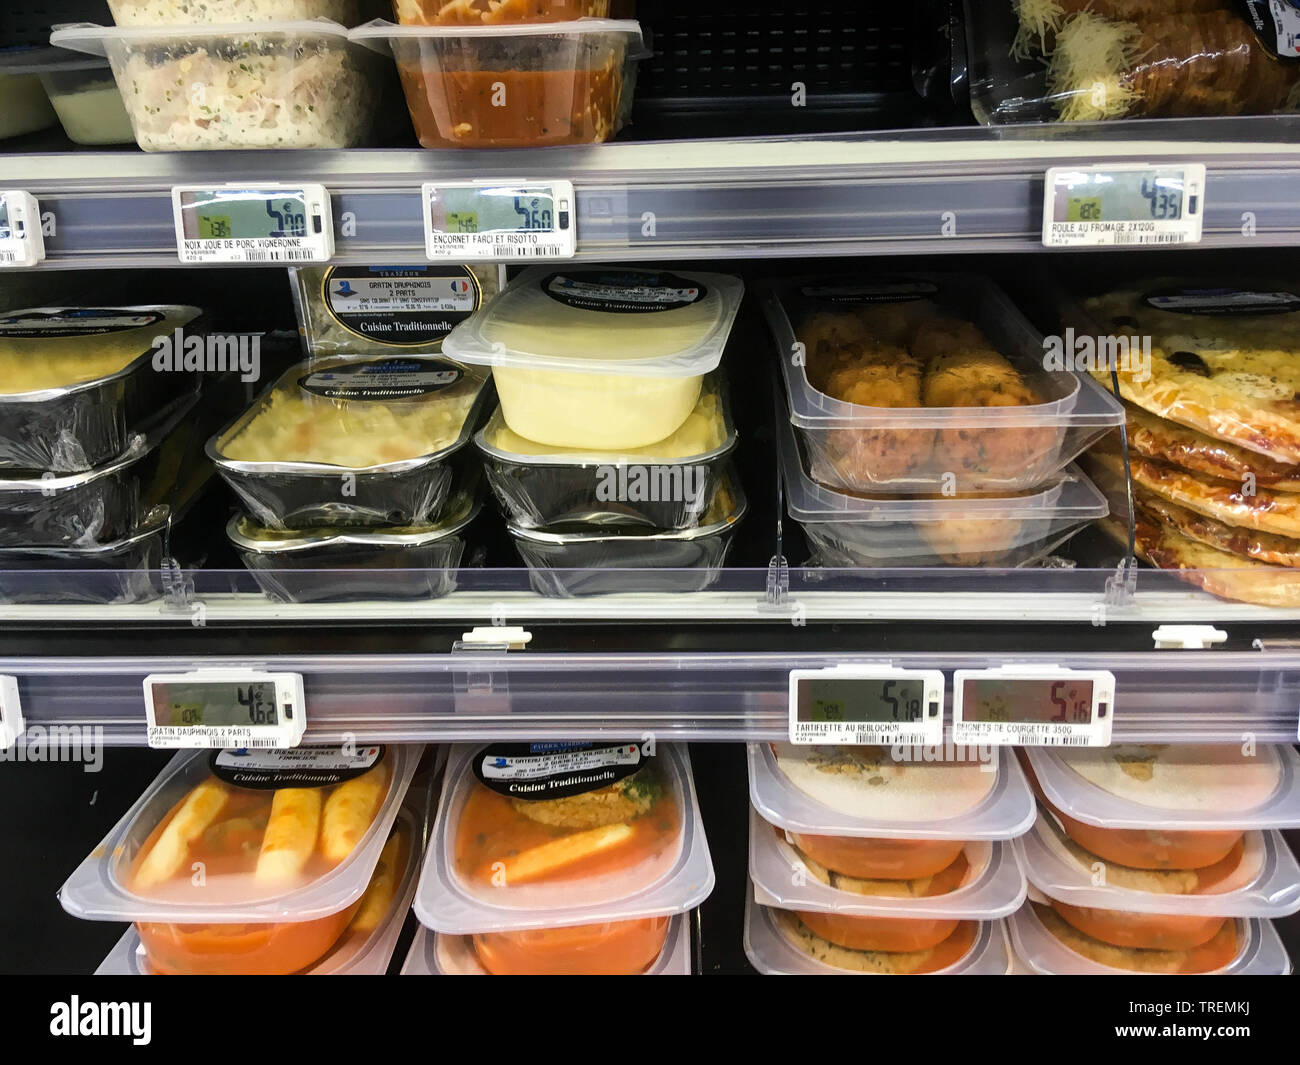 Piatti pronti in un supermercato, Lione, Francia Foto stock - Alamy